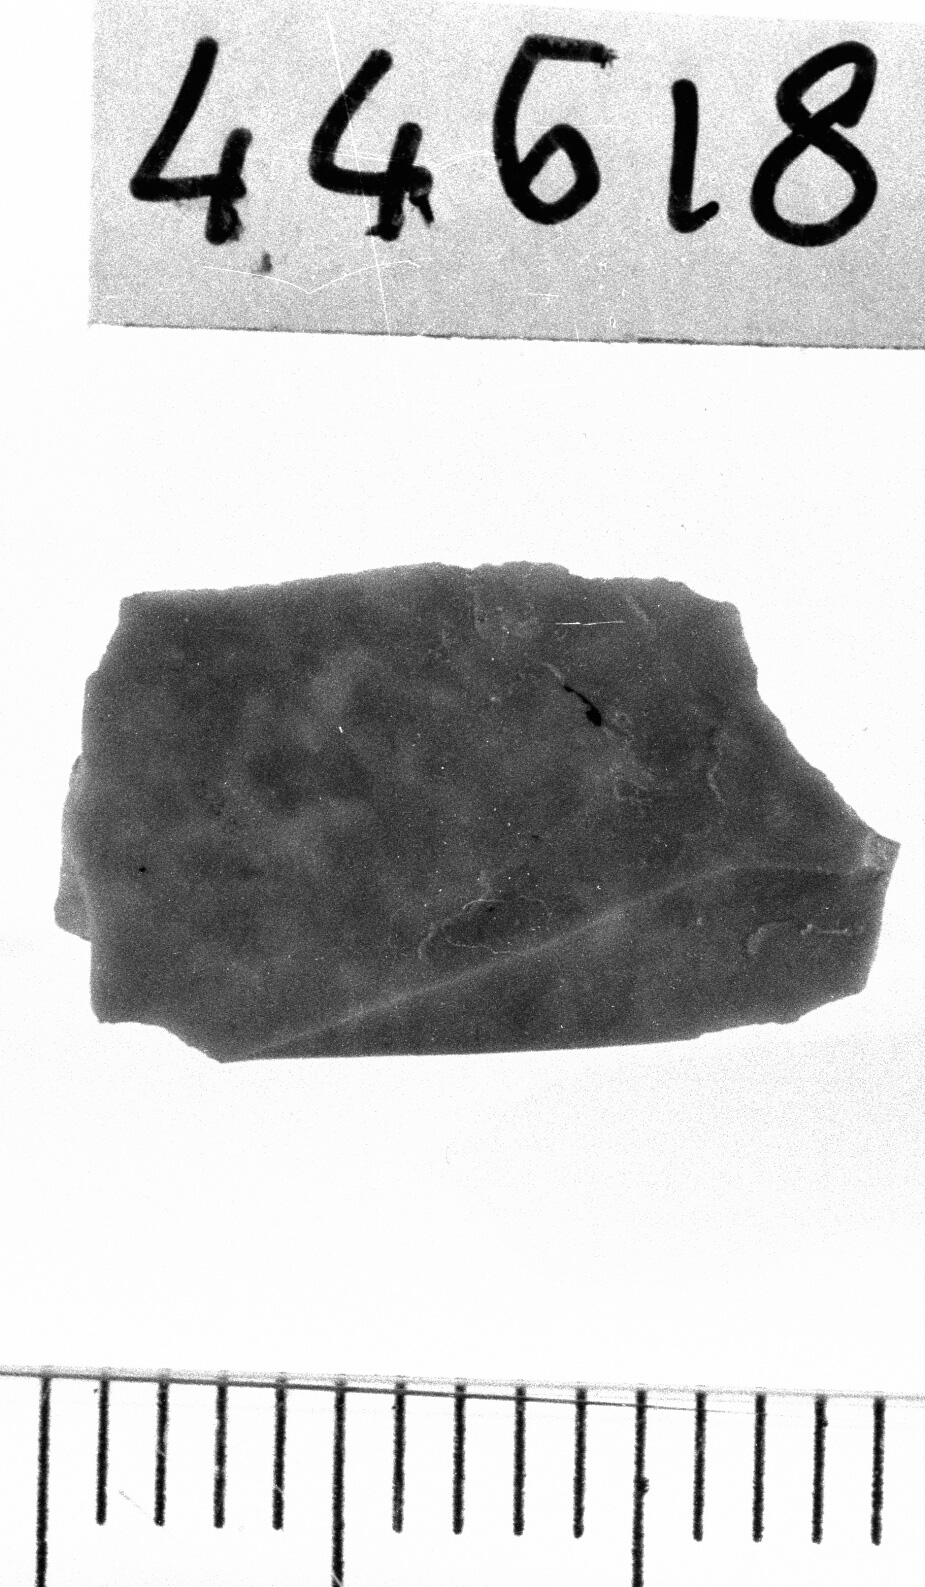 microbulino (Neolitico)